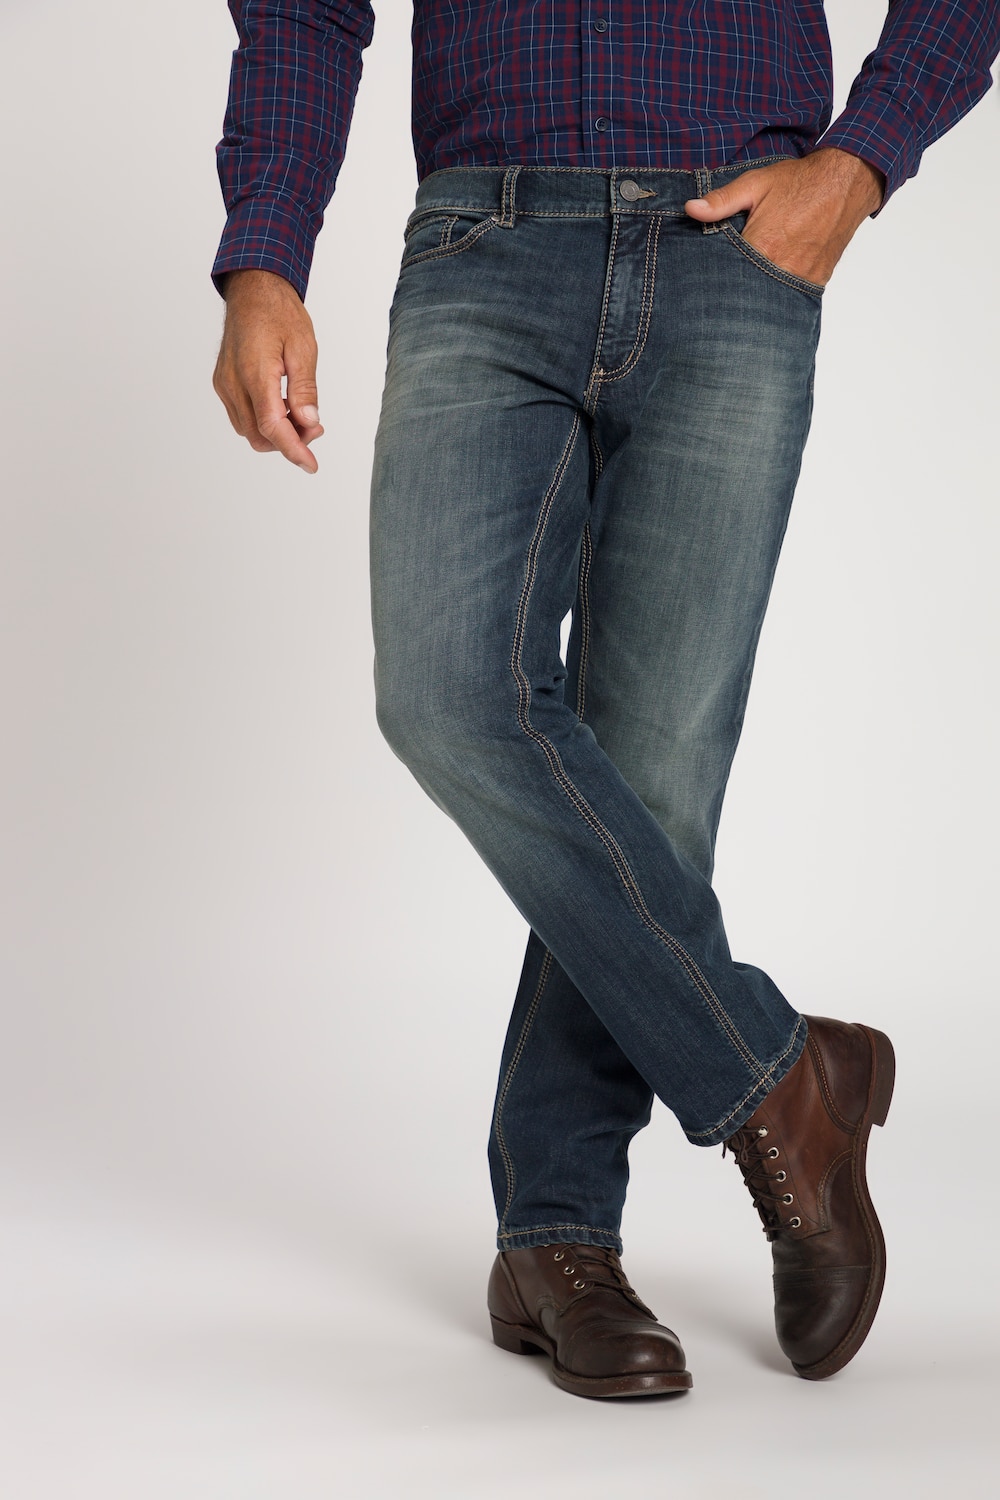 Grote Maten jeans, Heren, paars, Maat: 62, Katoen, JP1880